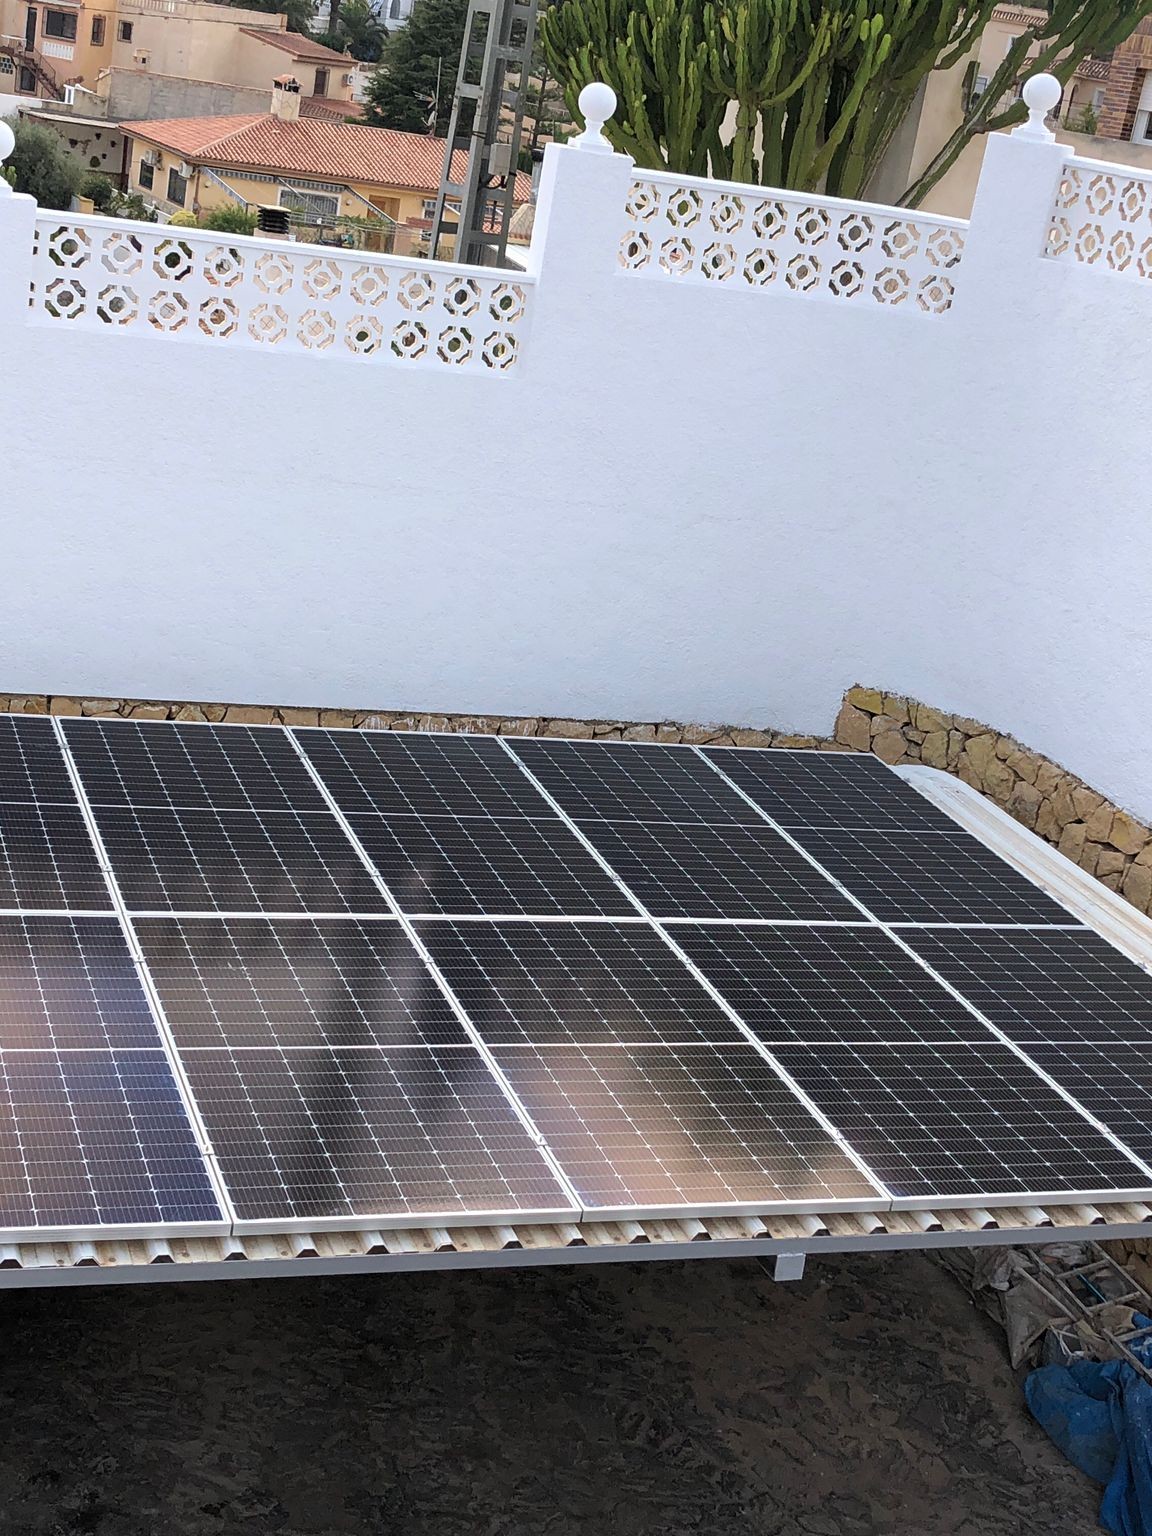 10X 455 wp Paneles Solares, Alfas del Pi, Alicante (Sistema híbrido)